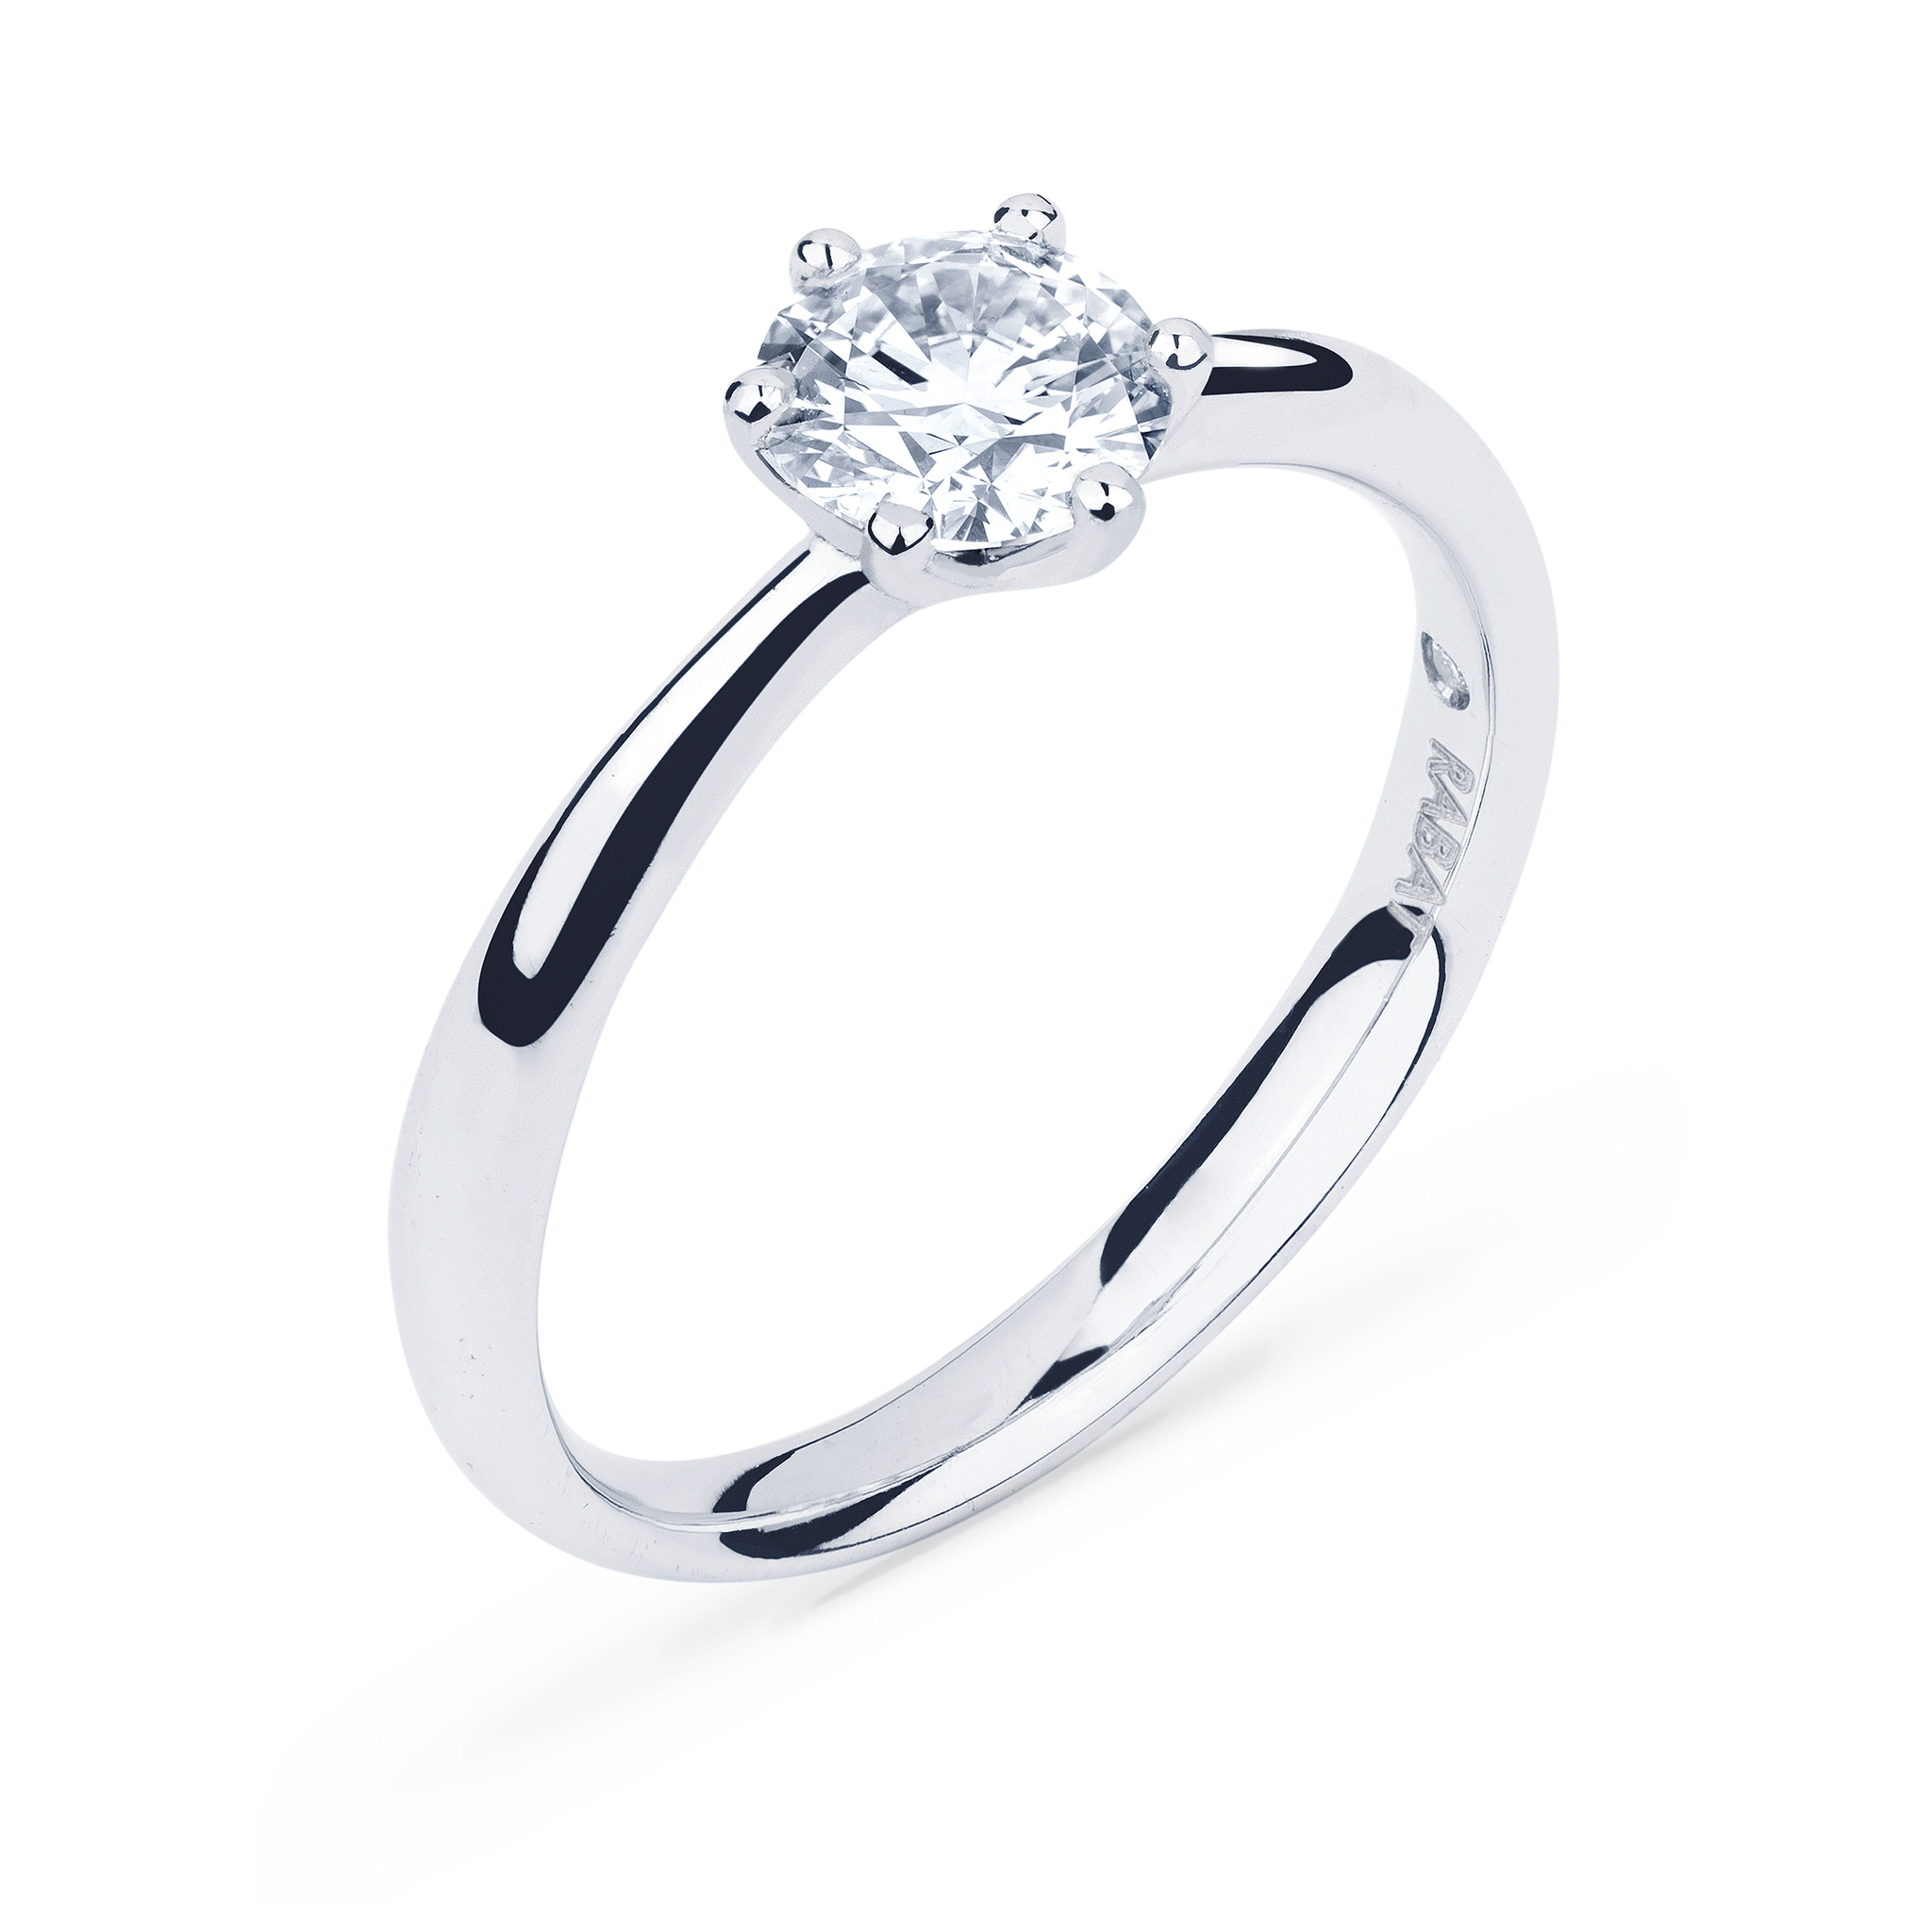 Tipos de anillos compromiso, su significado dónde encontrarlos |